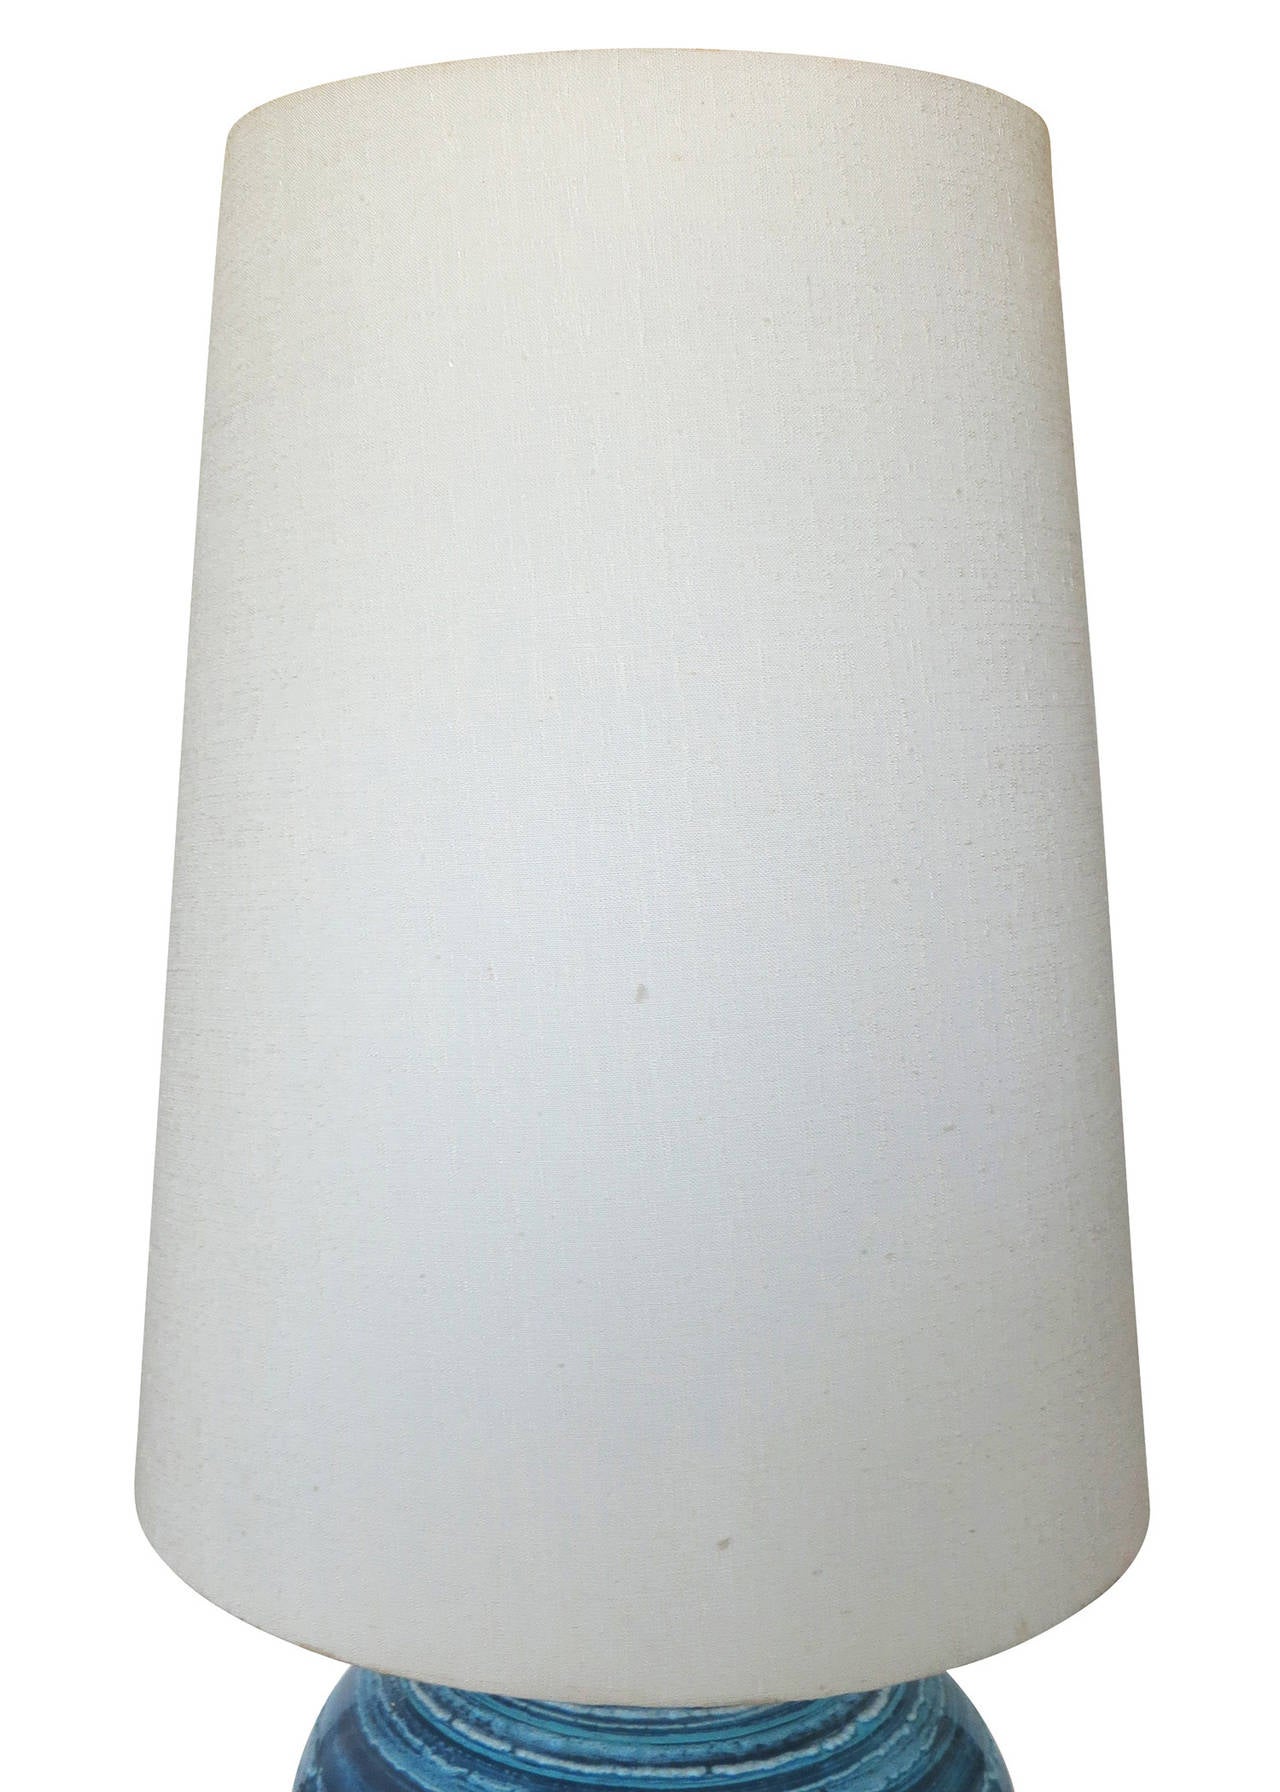 Une grande lampe en céramique émaillée à rayures bleues variées avec un abat-jour original transparent. Cette lampe est composée d'un pot en poterie bleu varié avec une base et un col en laiton plaqué bronze.

Lampe avec abat-jour 38,5